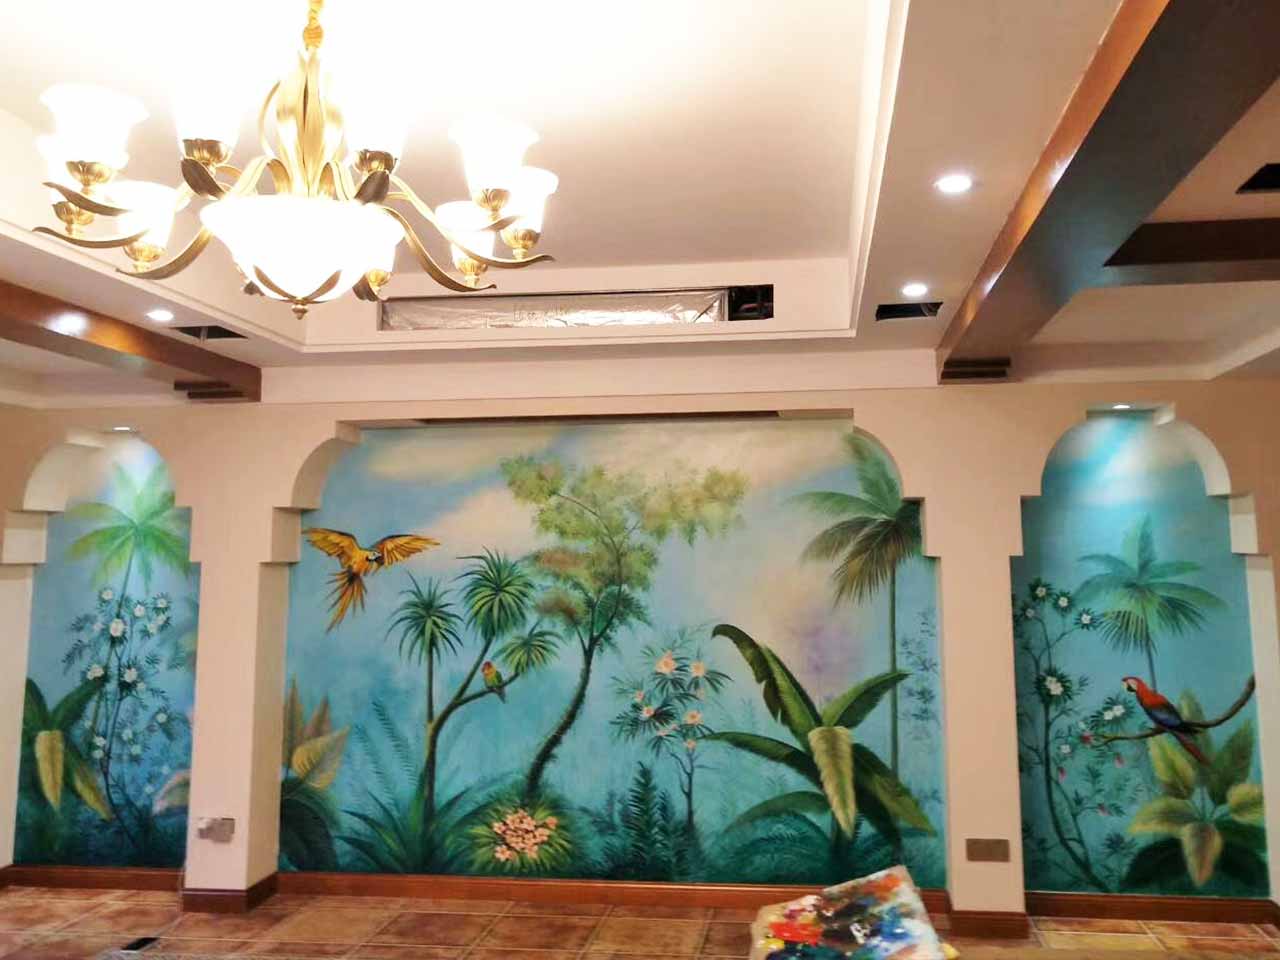 家装工装酒店会所美容院别墅写实花鸟风景墙绘壁画彩绘涂鸦手绘成都澜泉文化